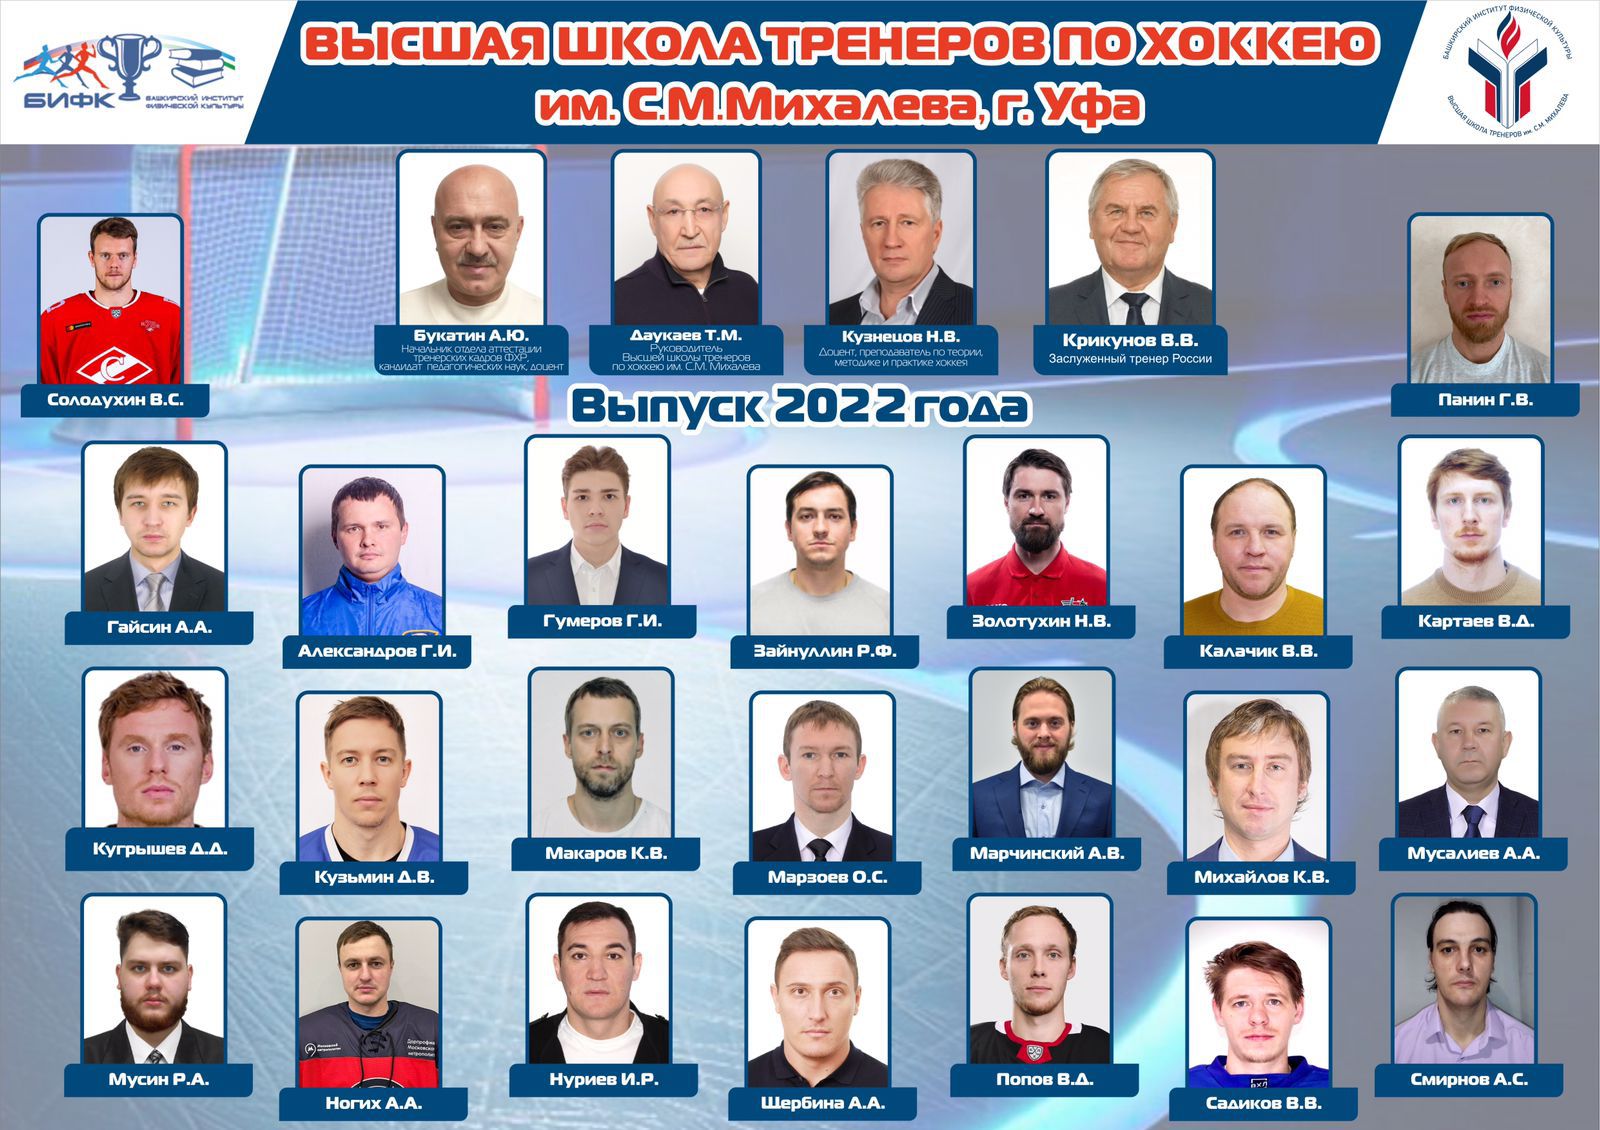 Вручение дипломов Высшей школы тренеров им. С.М.Михалева  (четвёртый набор) 24 июня 2022 года.